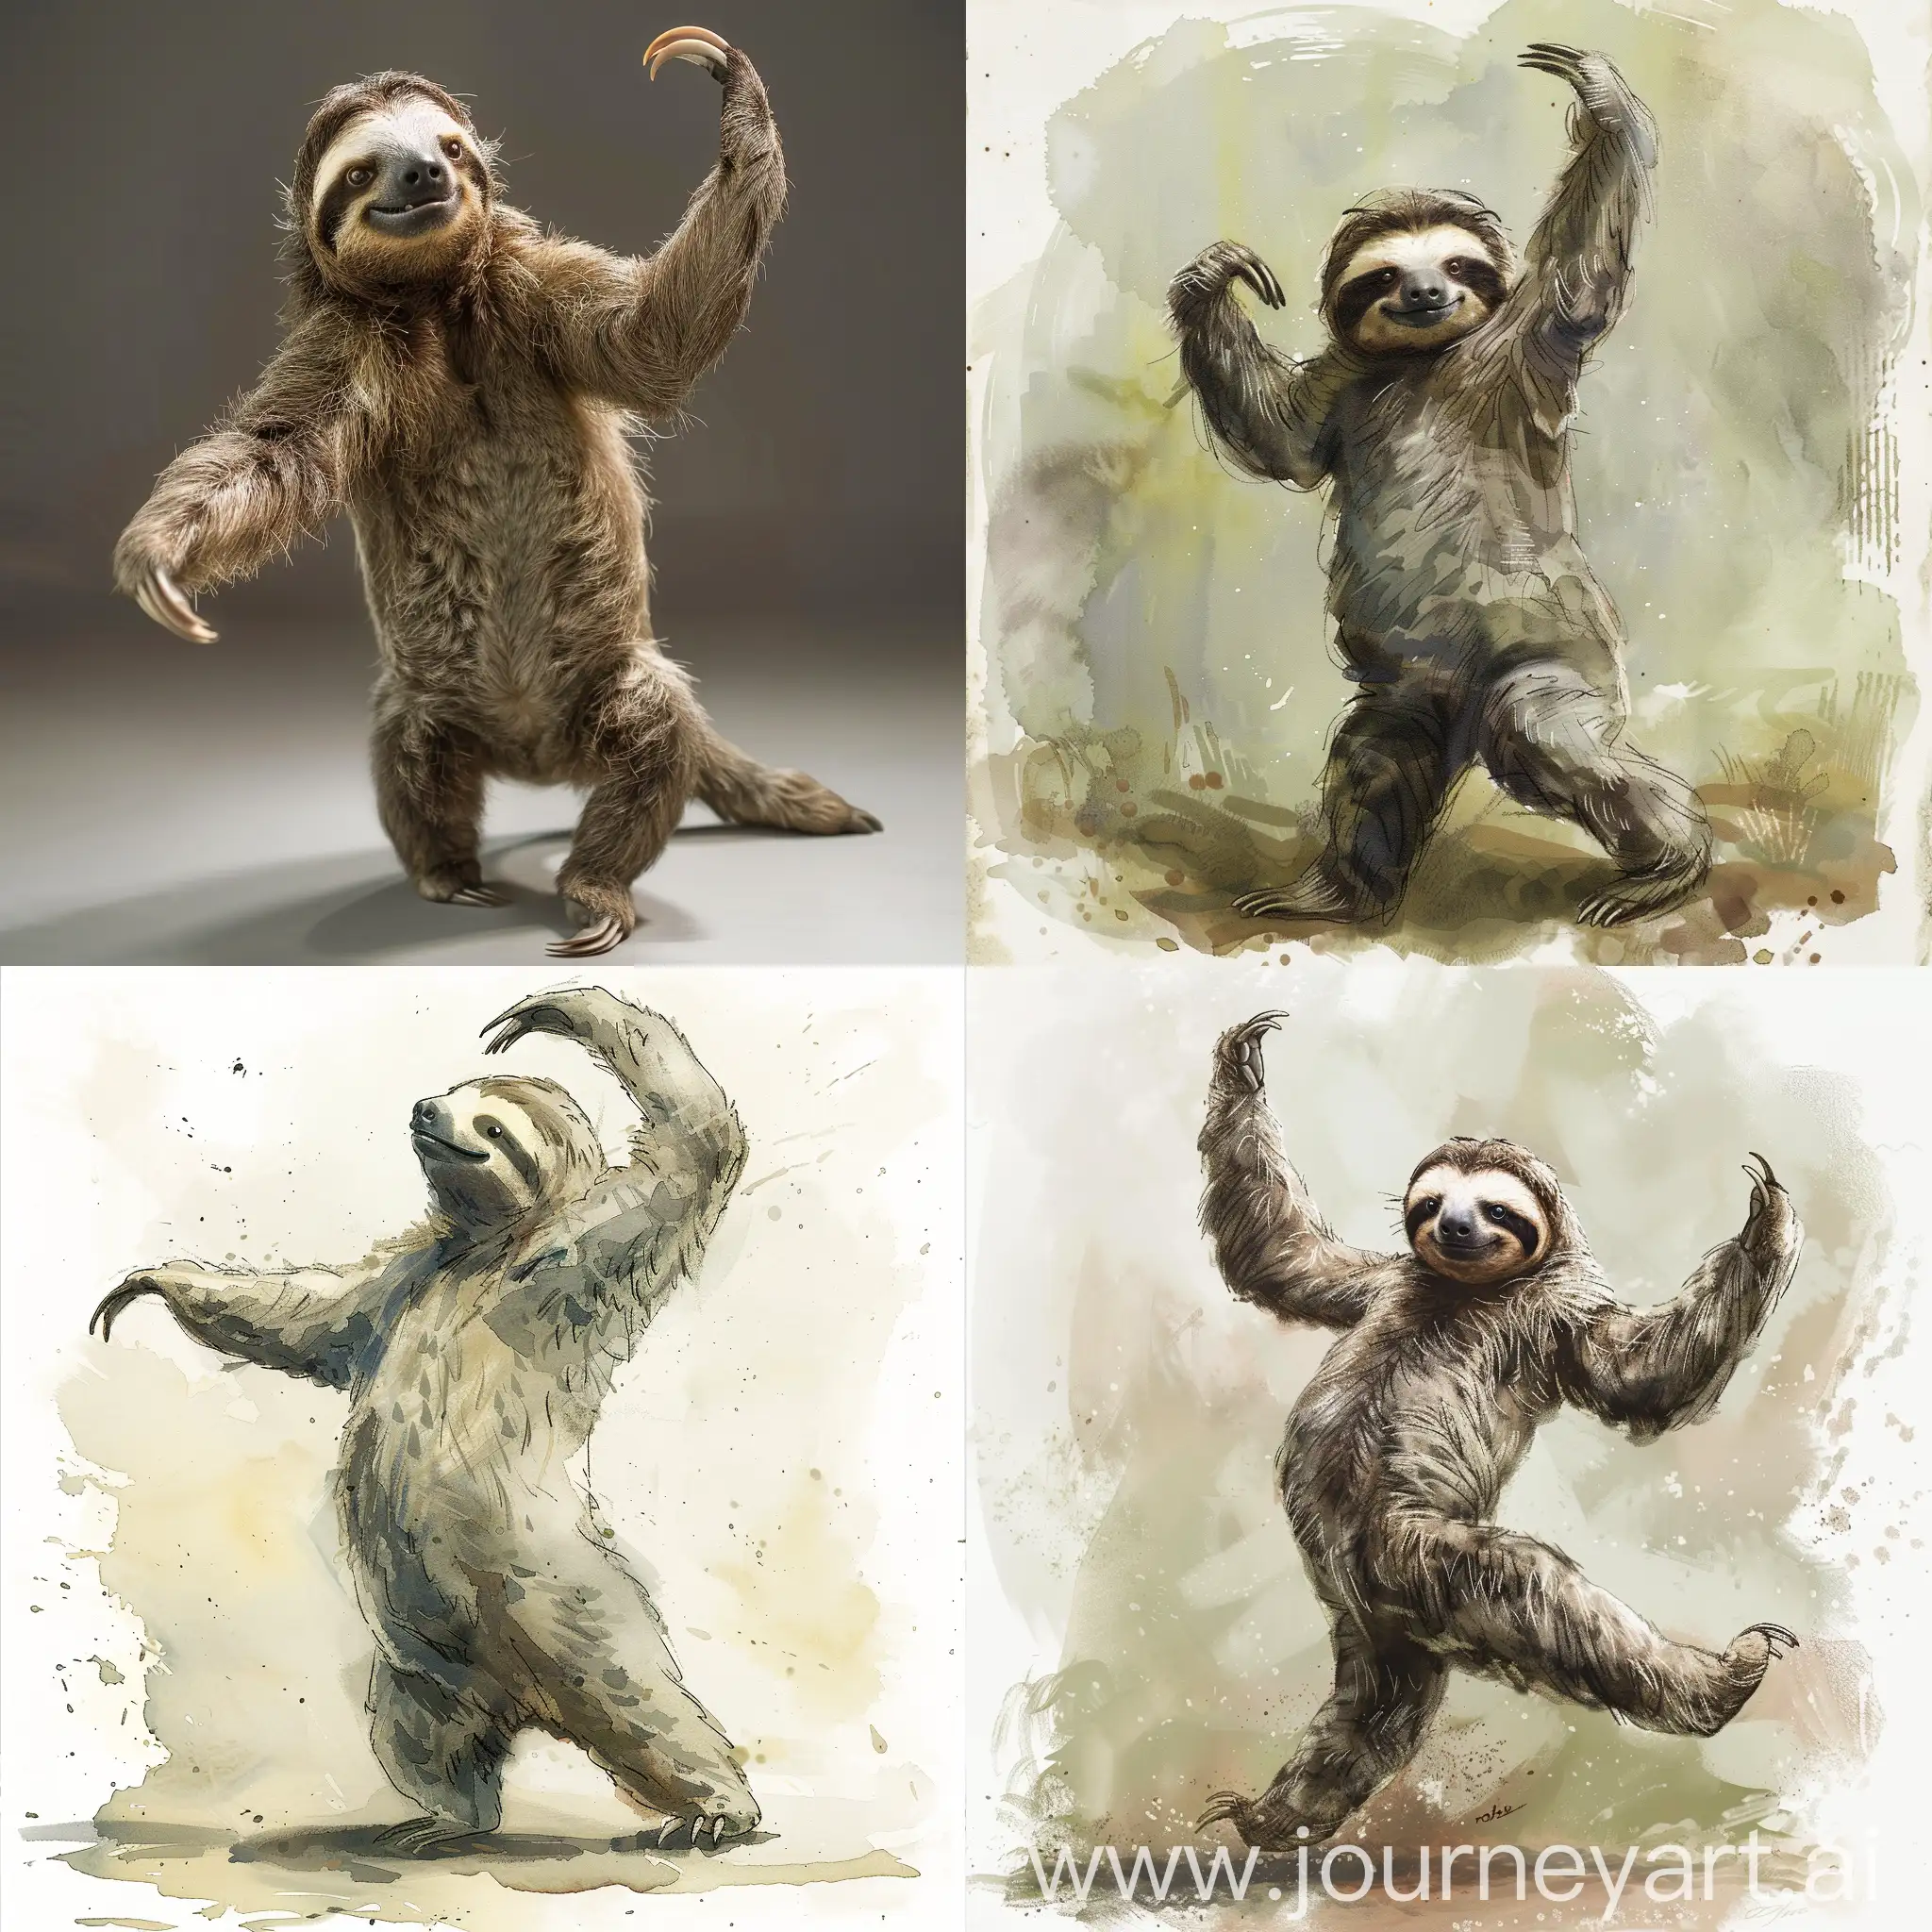 Dancing sloth